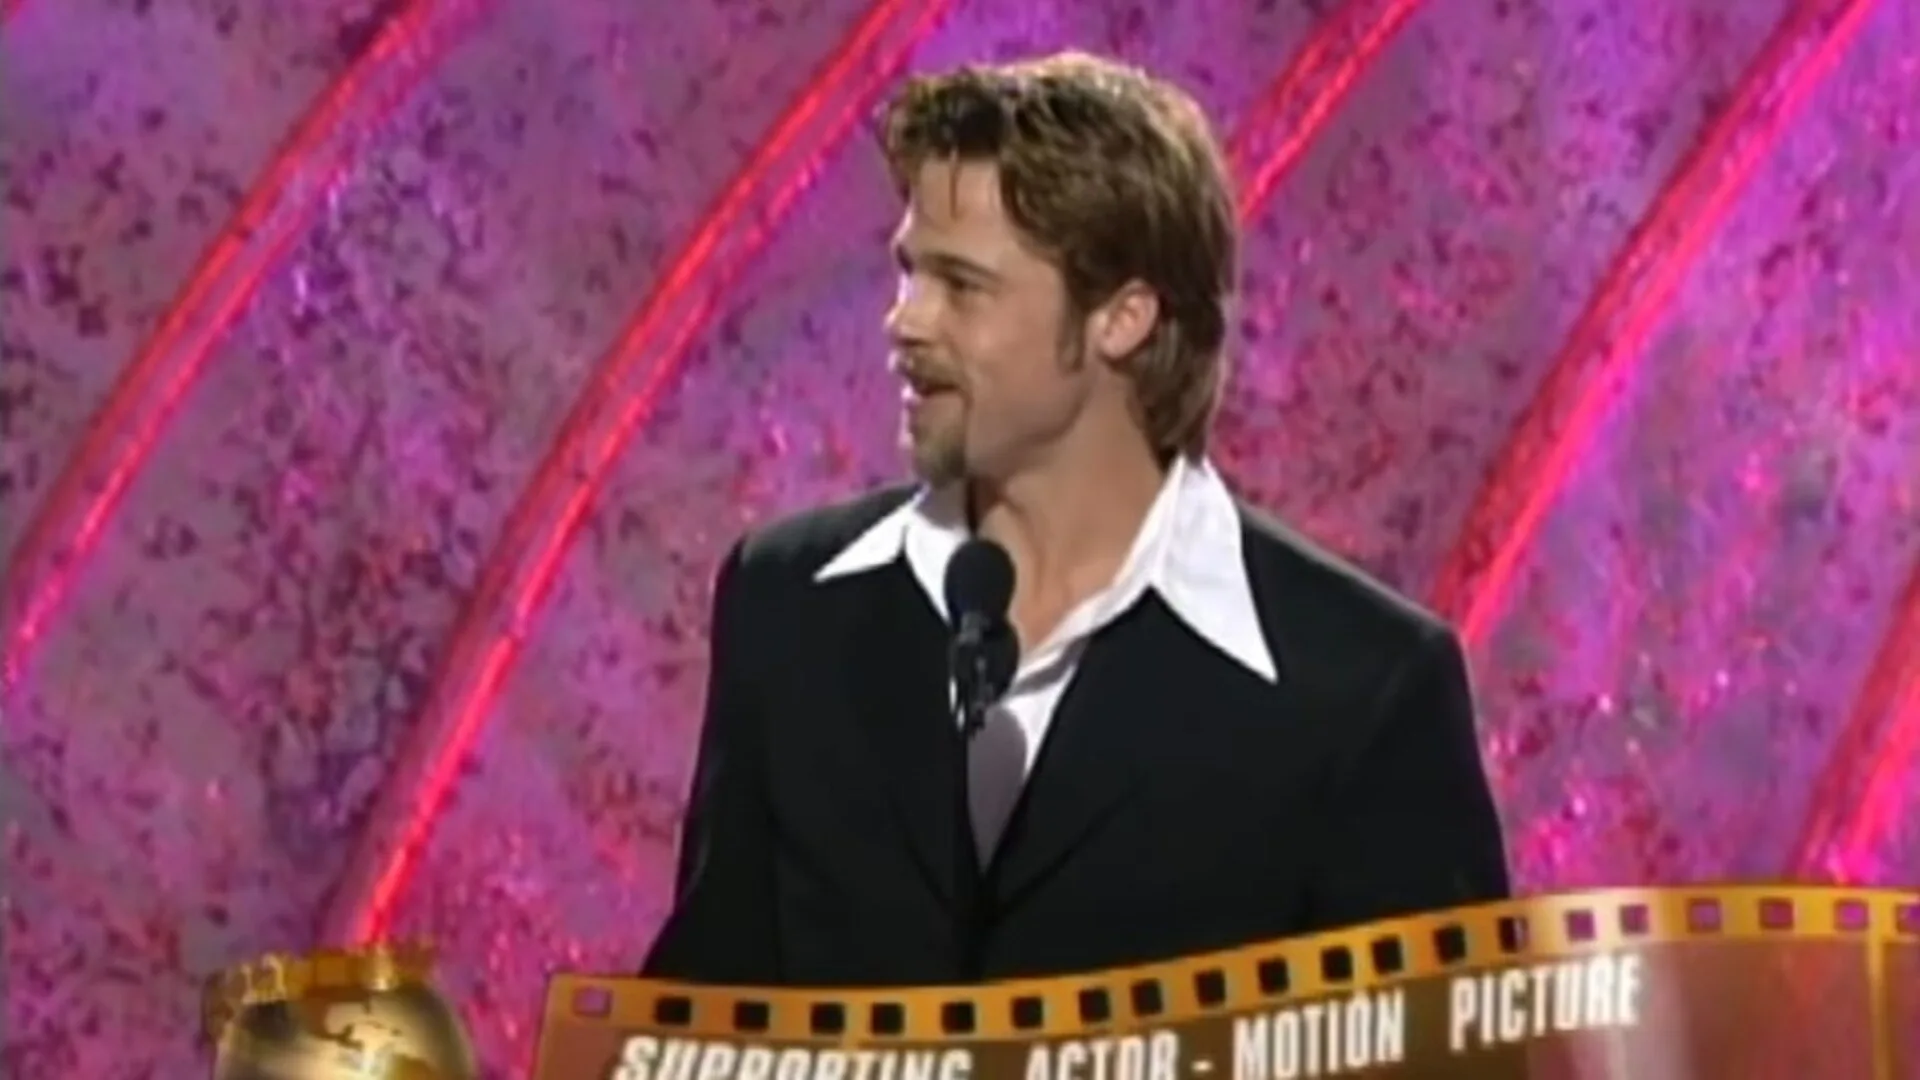 Brad Pitt en los Globos de Oro.